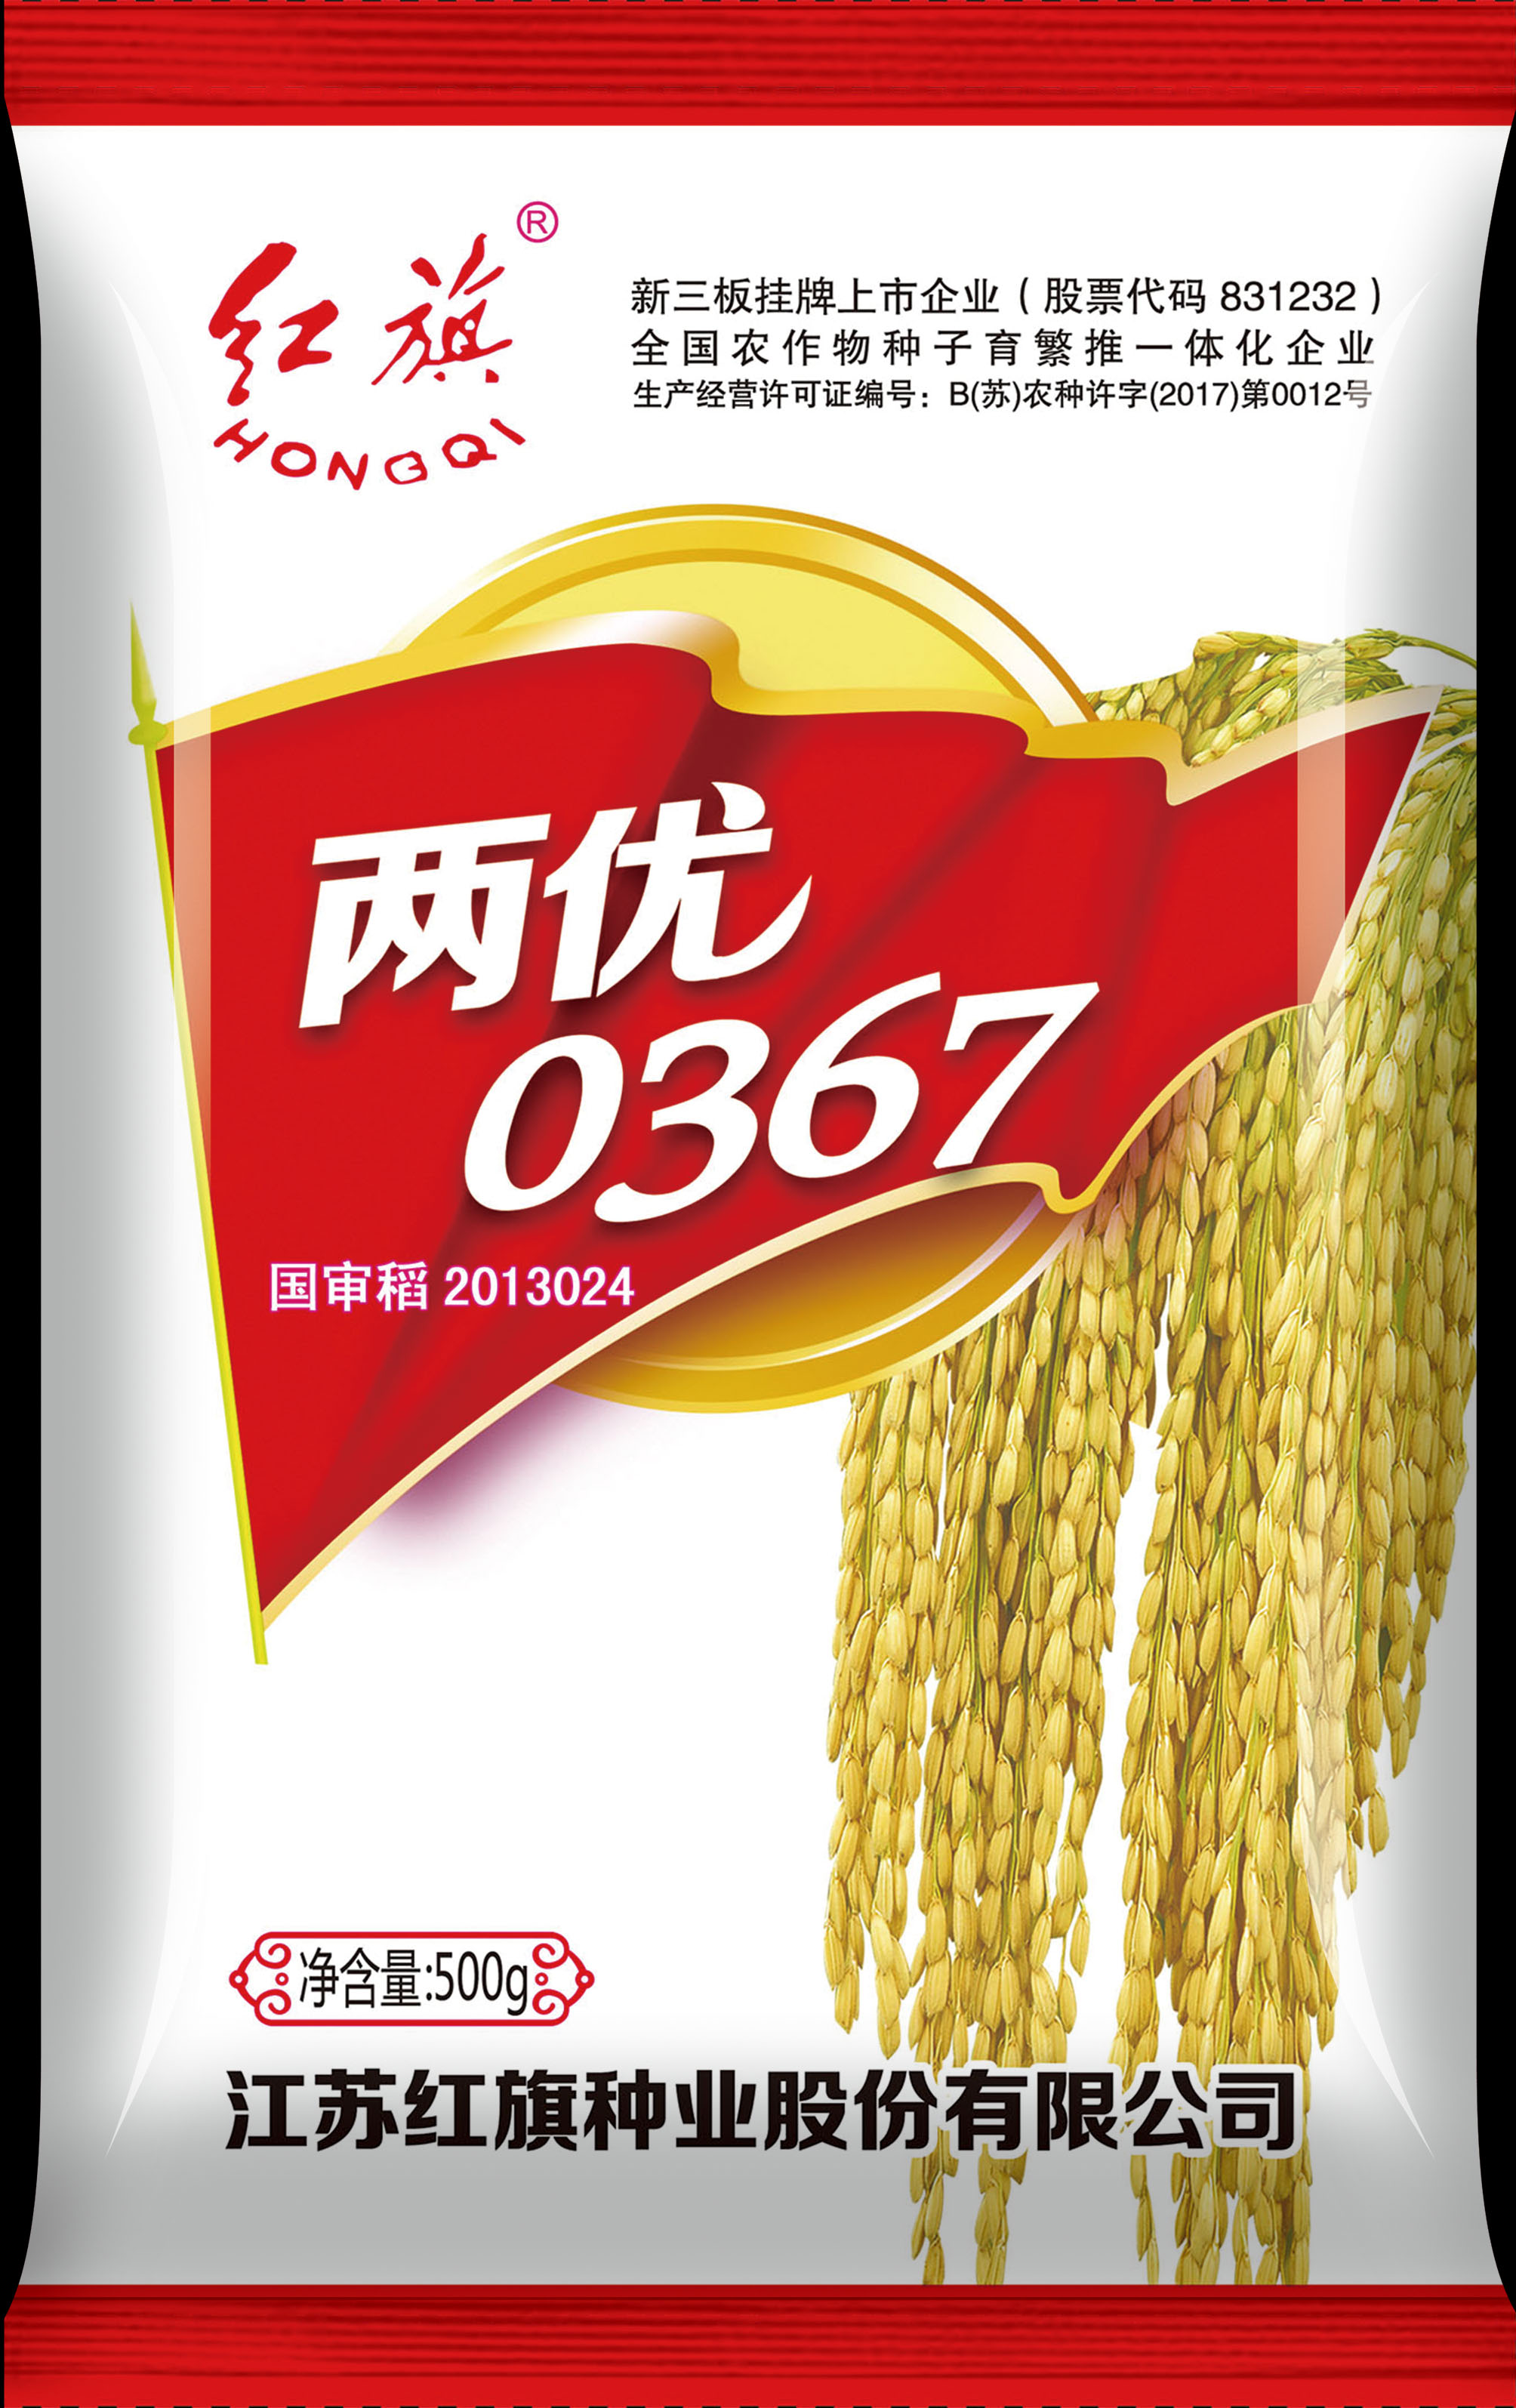  Liangyou 0367